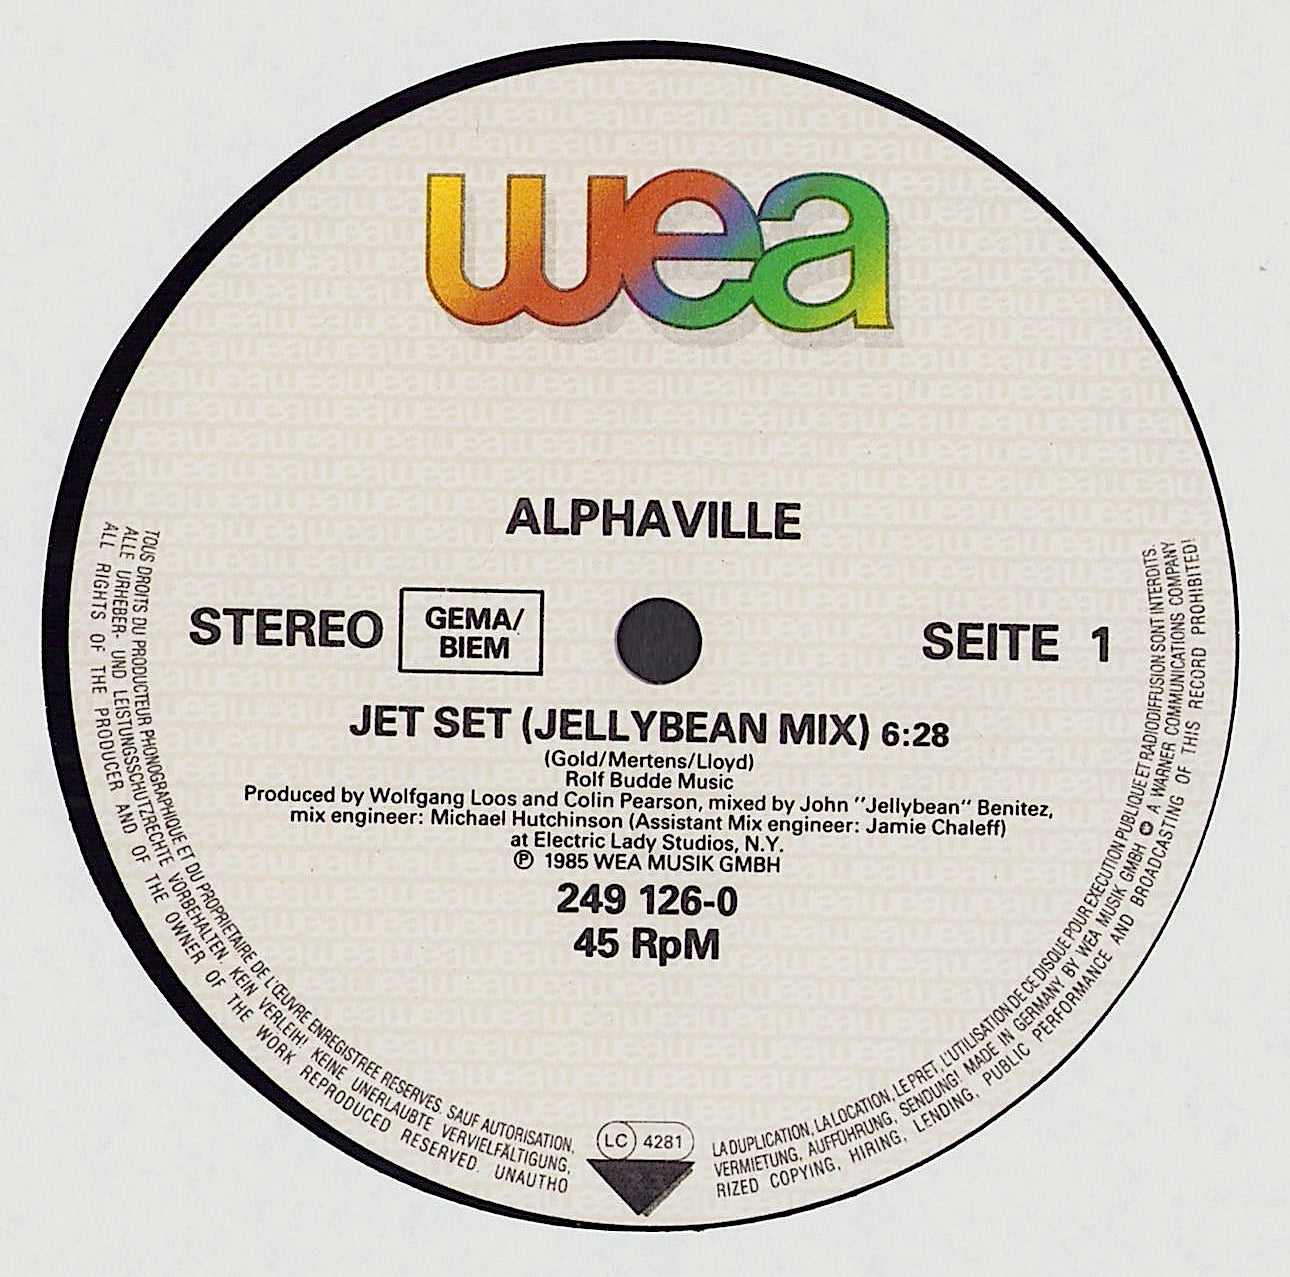 Alphaville - Jet Set Jellybean Mix Vinyl 12"